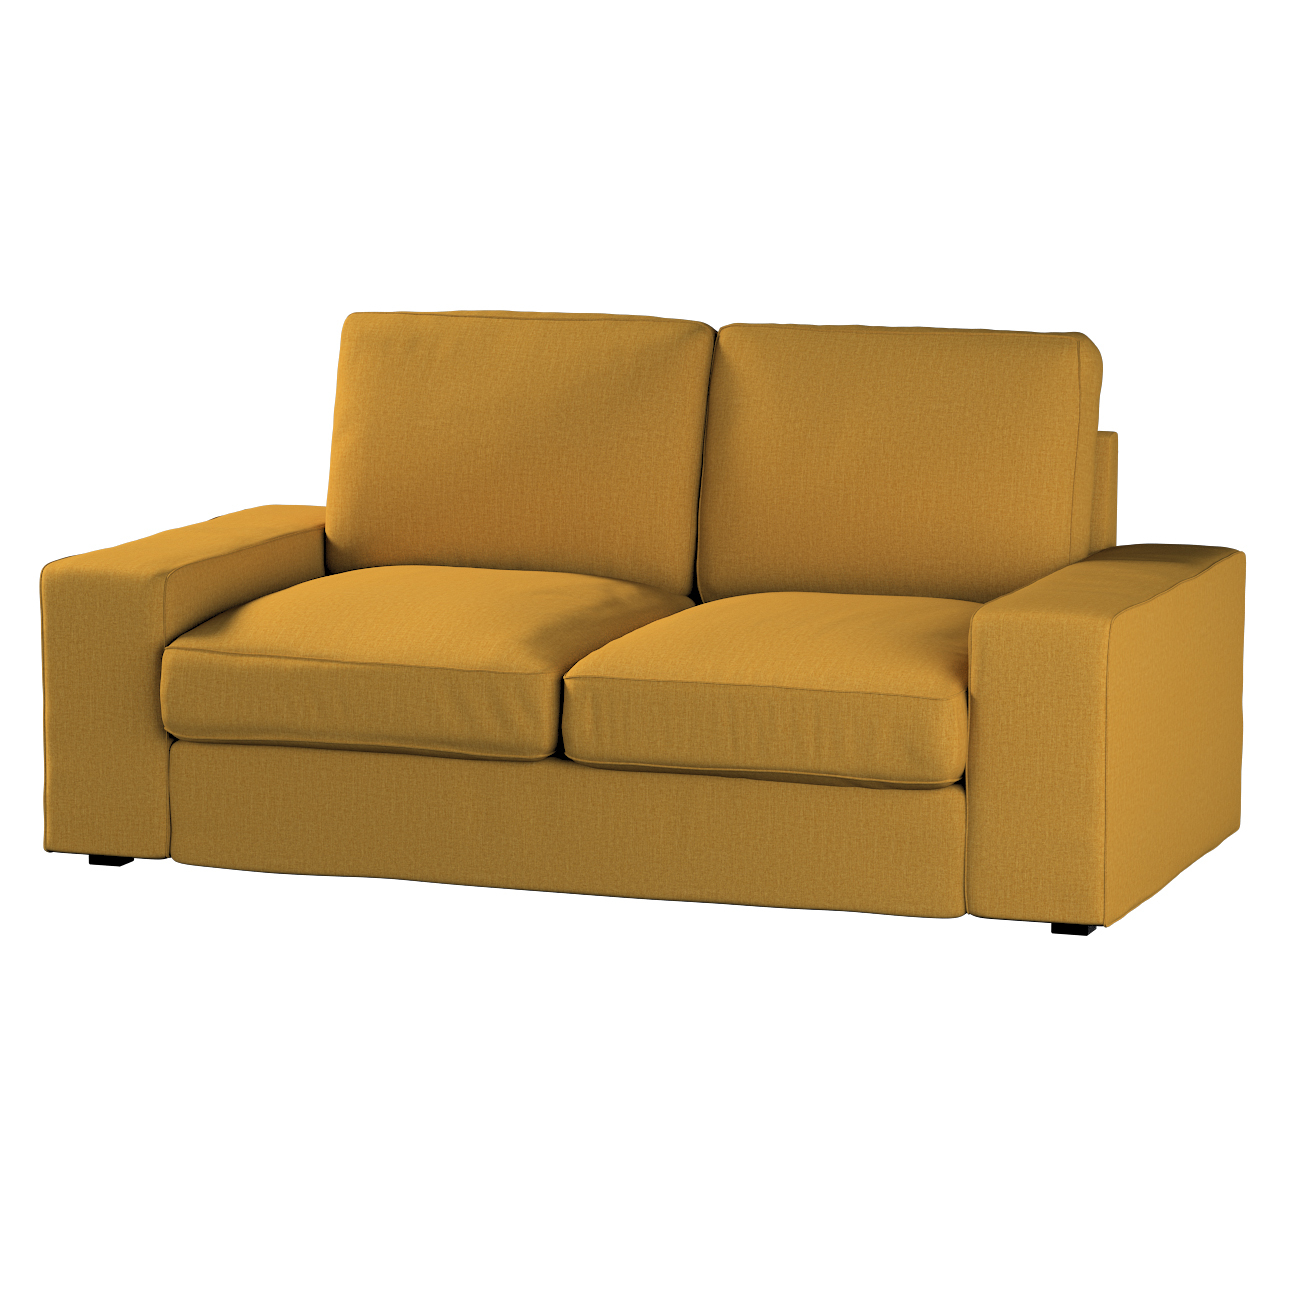 Bezug für Kivik 2-Sitzer Sofa, senfgelb, Bezug für Sofa Kivik 2-Sitzer, Cit günstig online kaufen